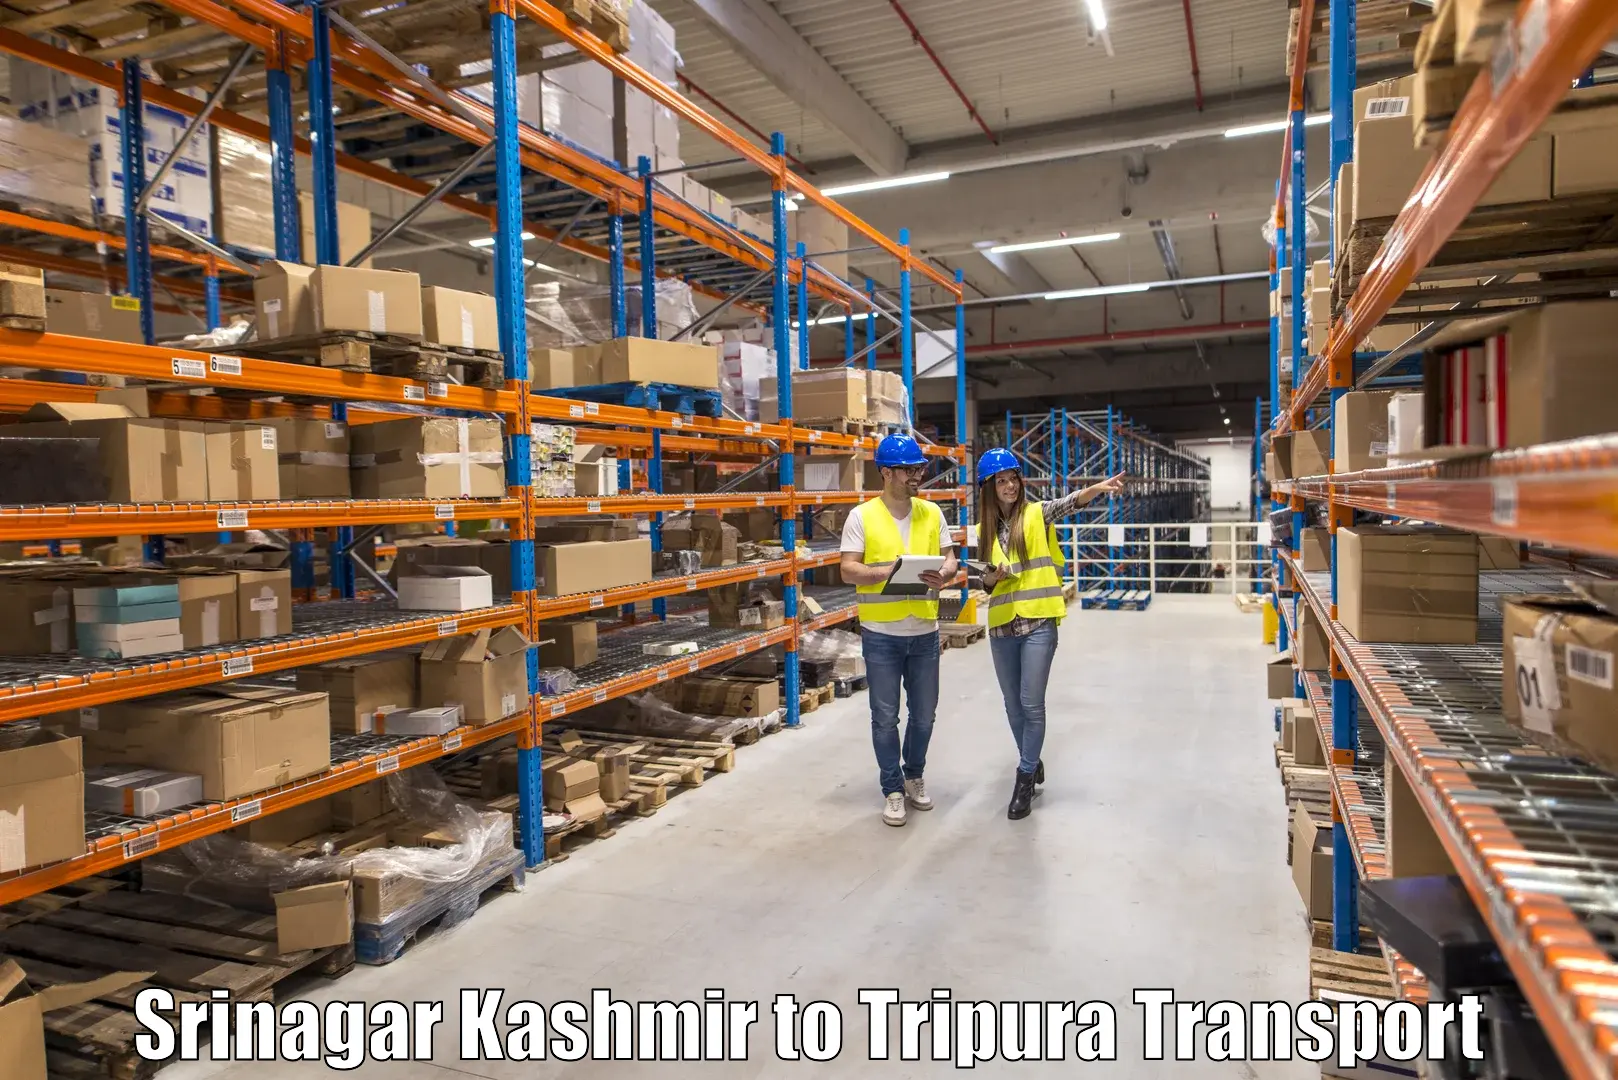 Goods delivery service Srinagar Kashmir to Manughat